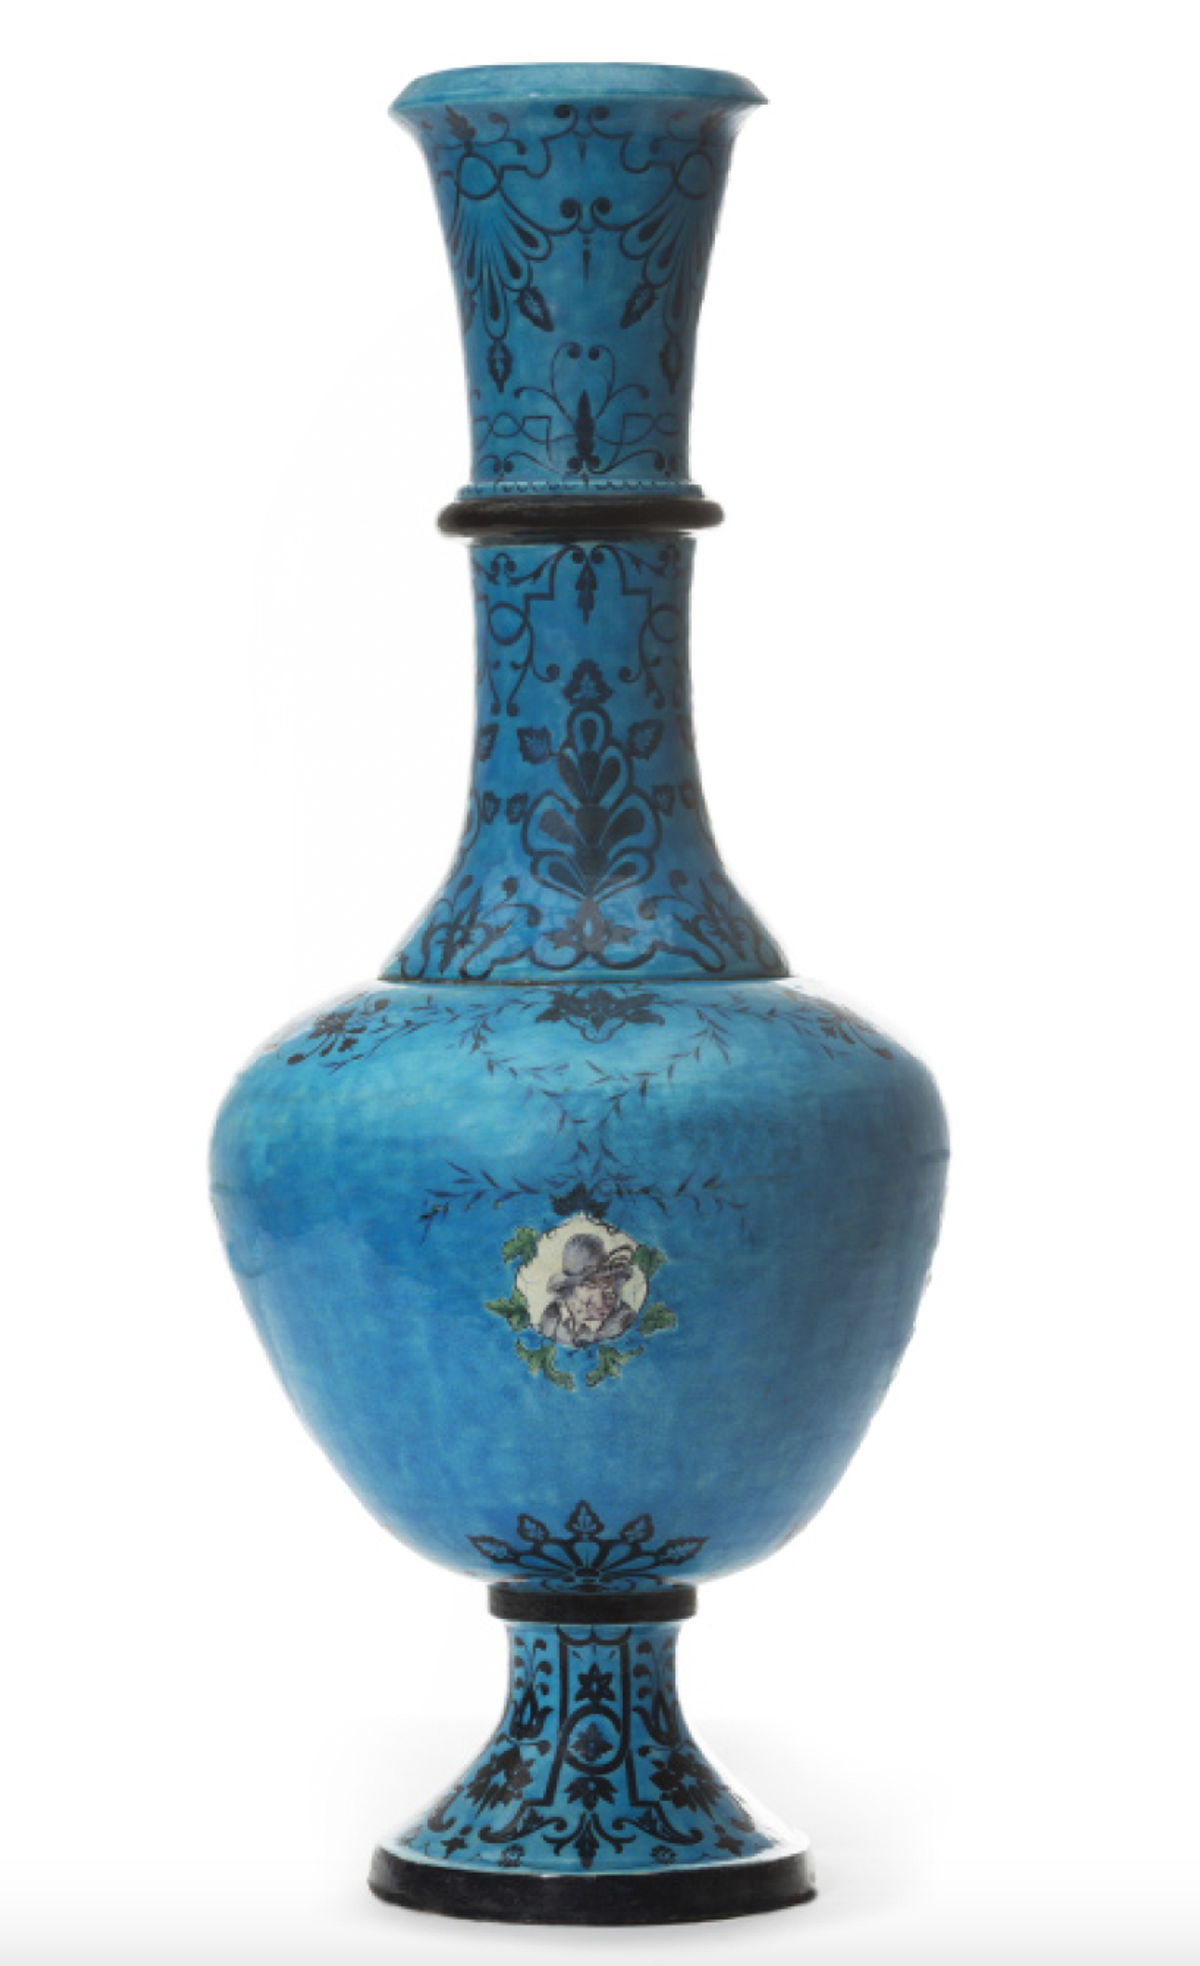 Grand vase bleu turquoise à décor de style persan, signé « Doré », v. 1865. Courtesy Galerie Vauclair